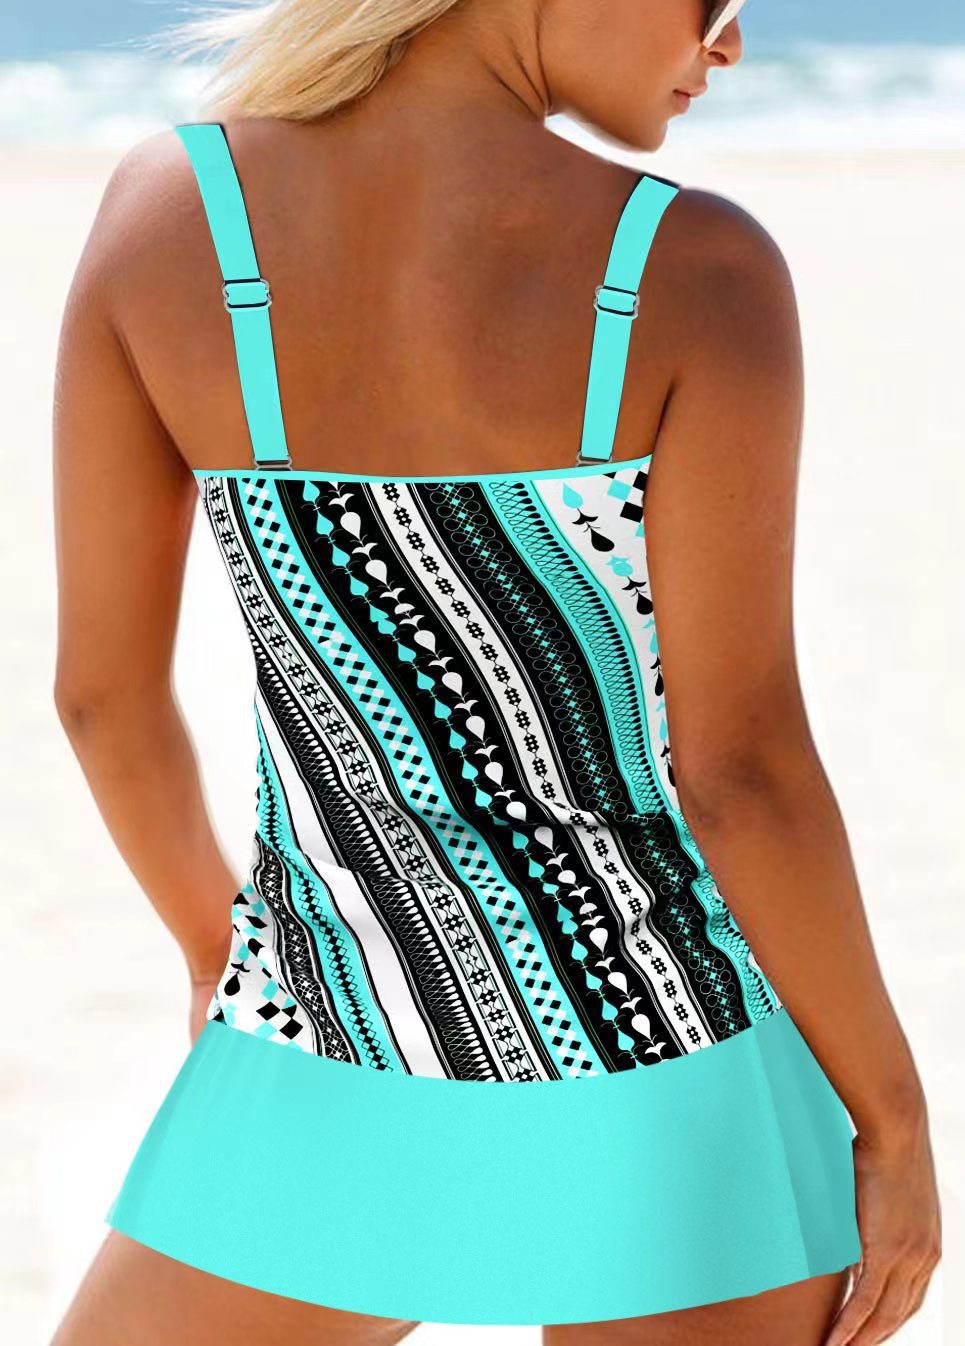 BamBam Fashion Print Swimming Tank Skirt Two Pieces Plus Size Fashion Beach Swimsuit - BamBam